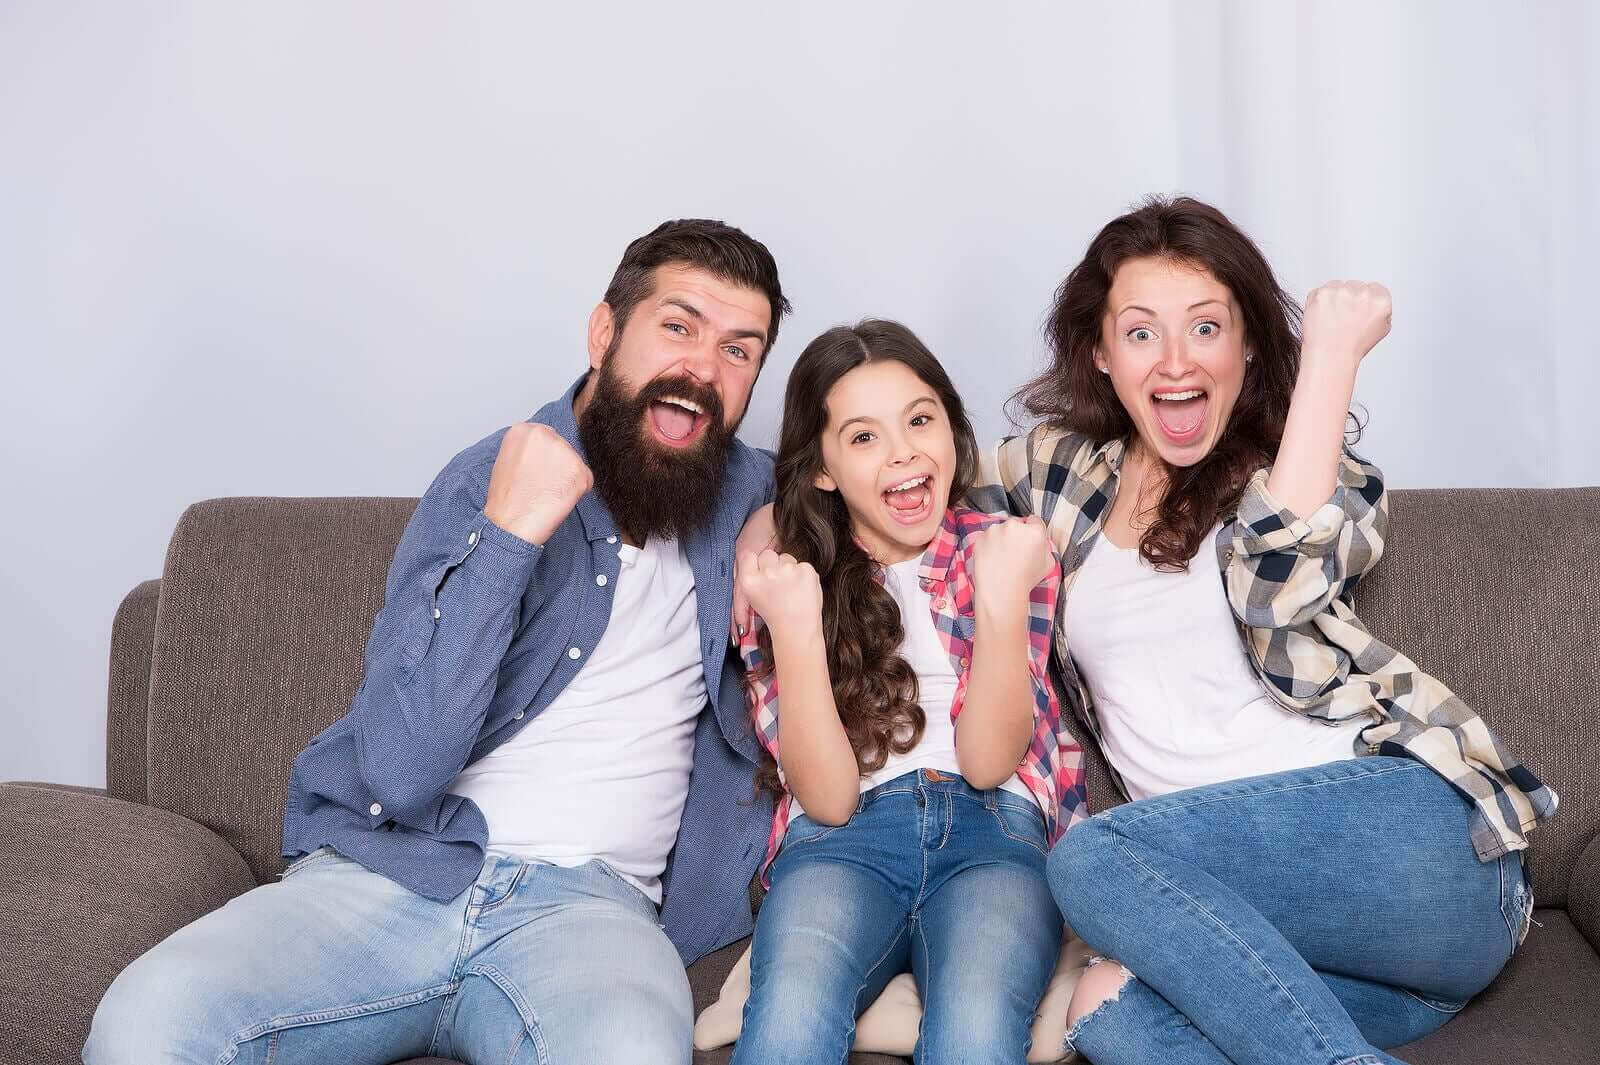 språklig kompetens hemma: glad familj i soffa